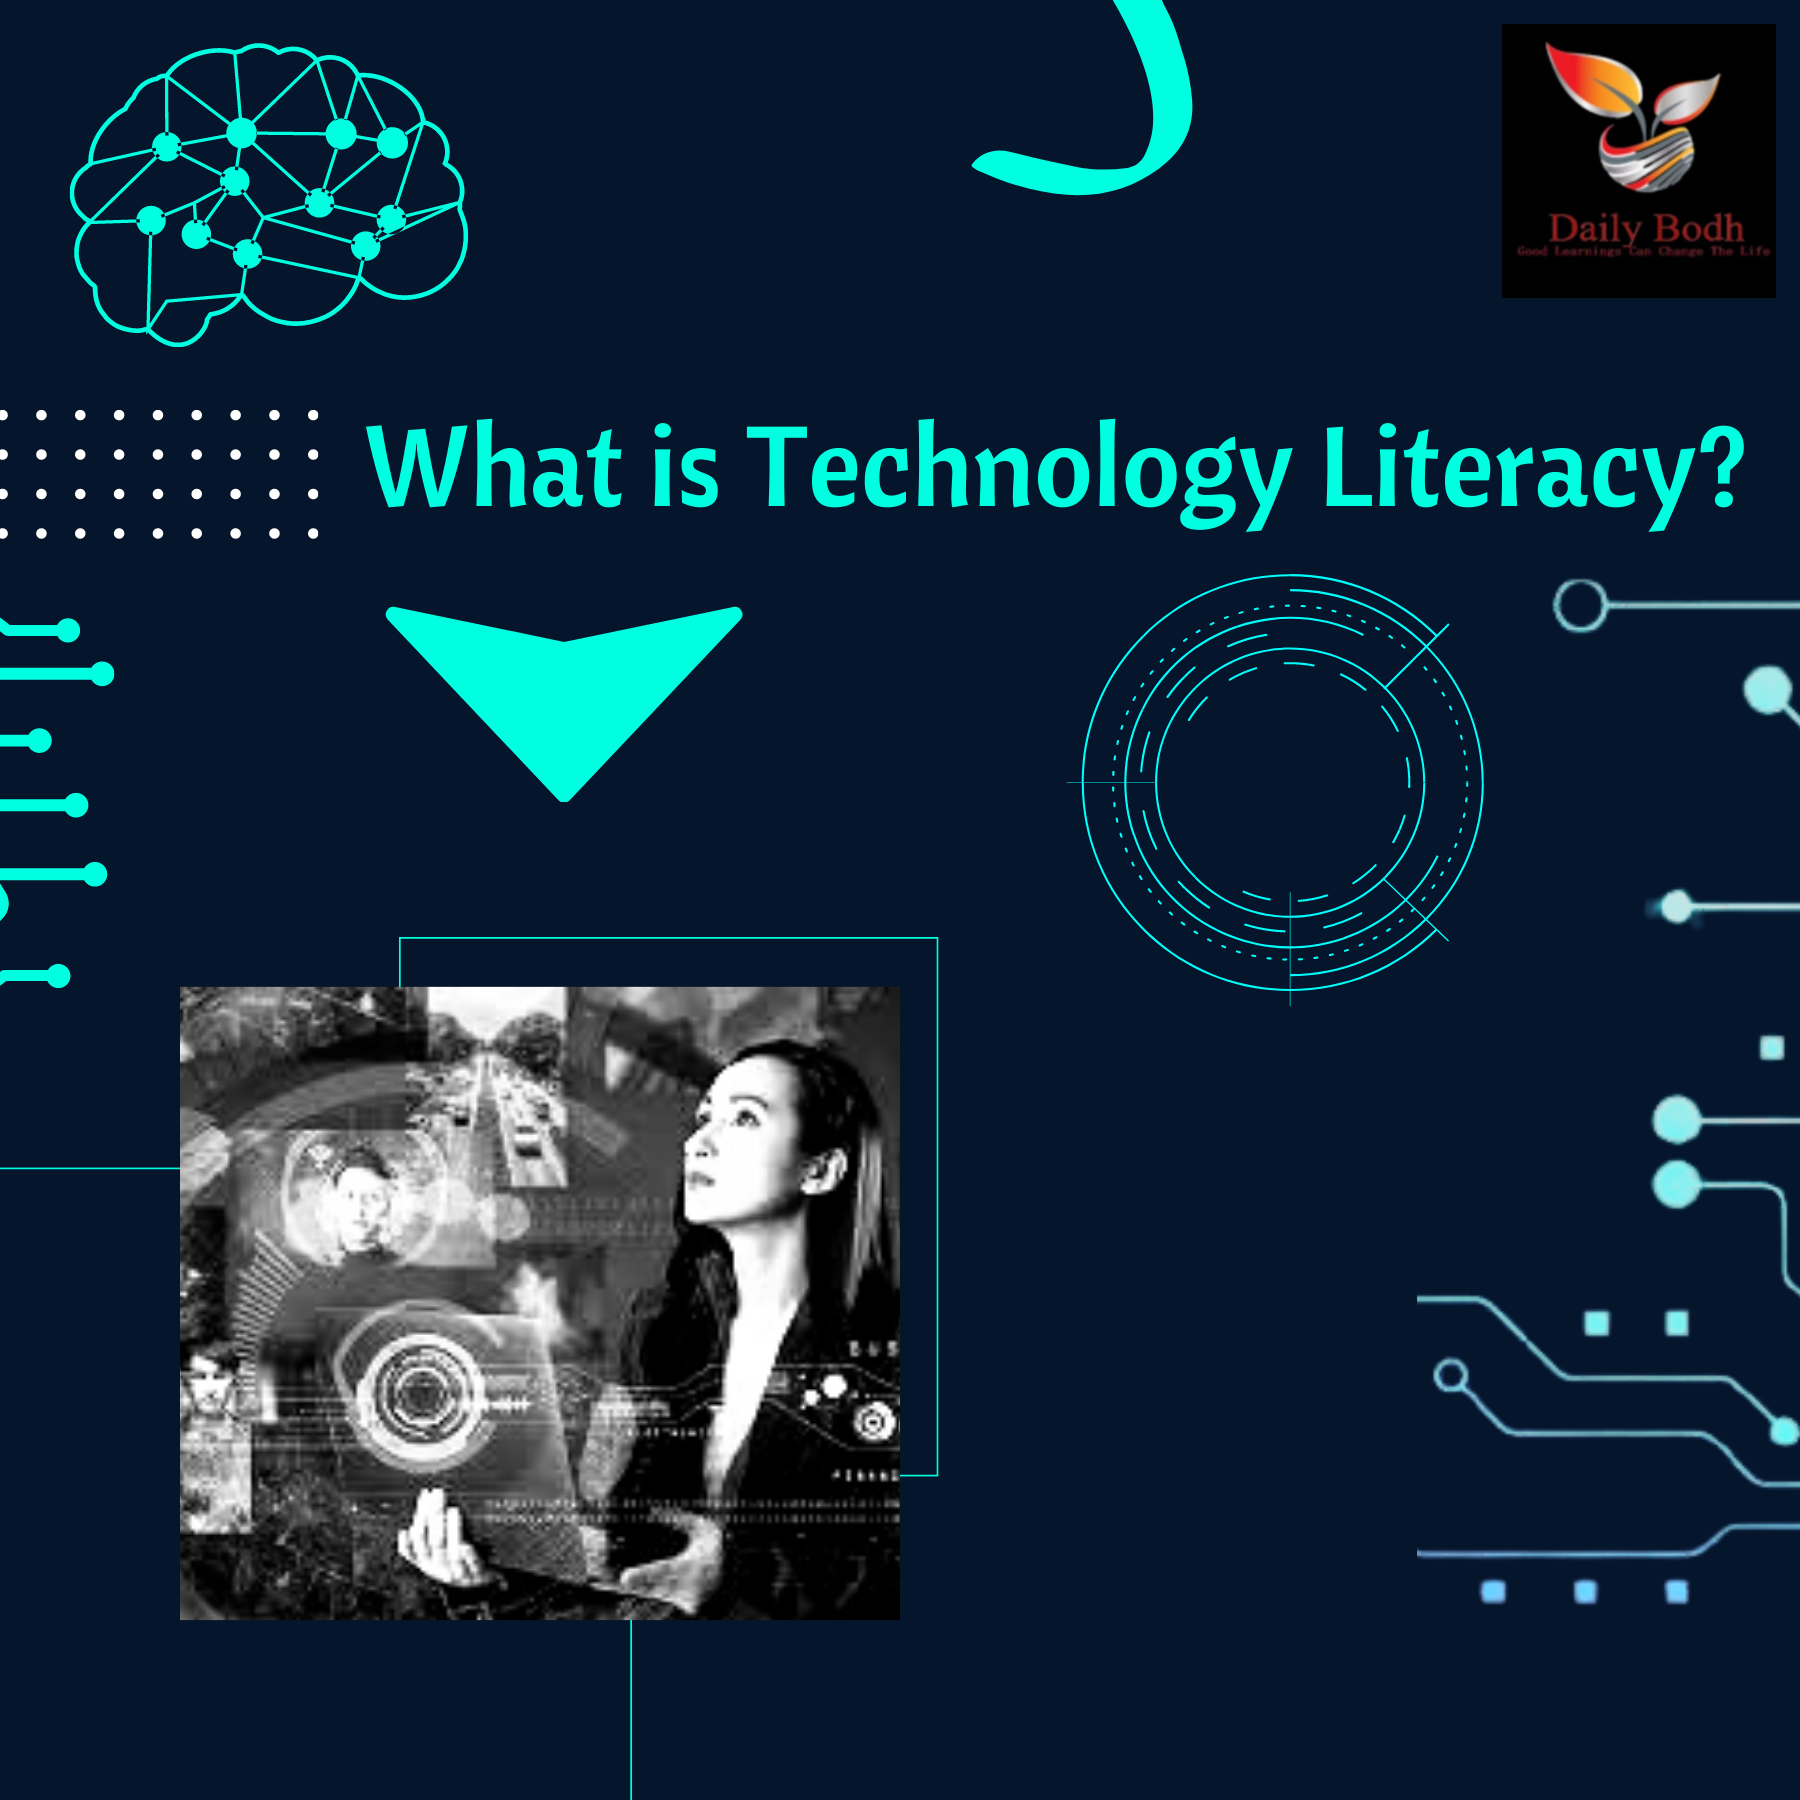 Technology Literacy